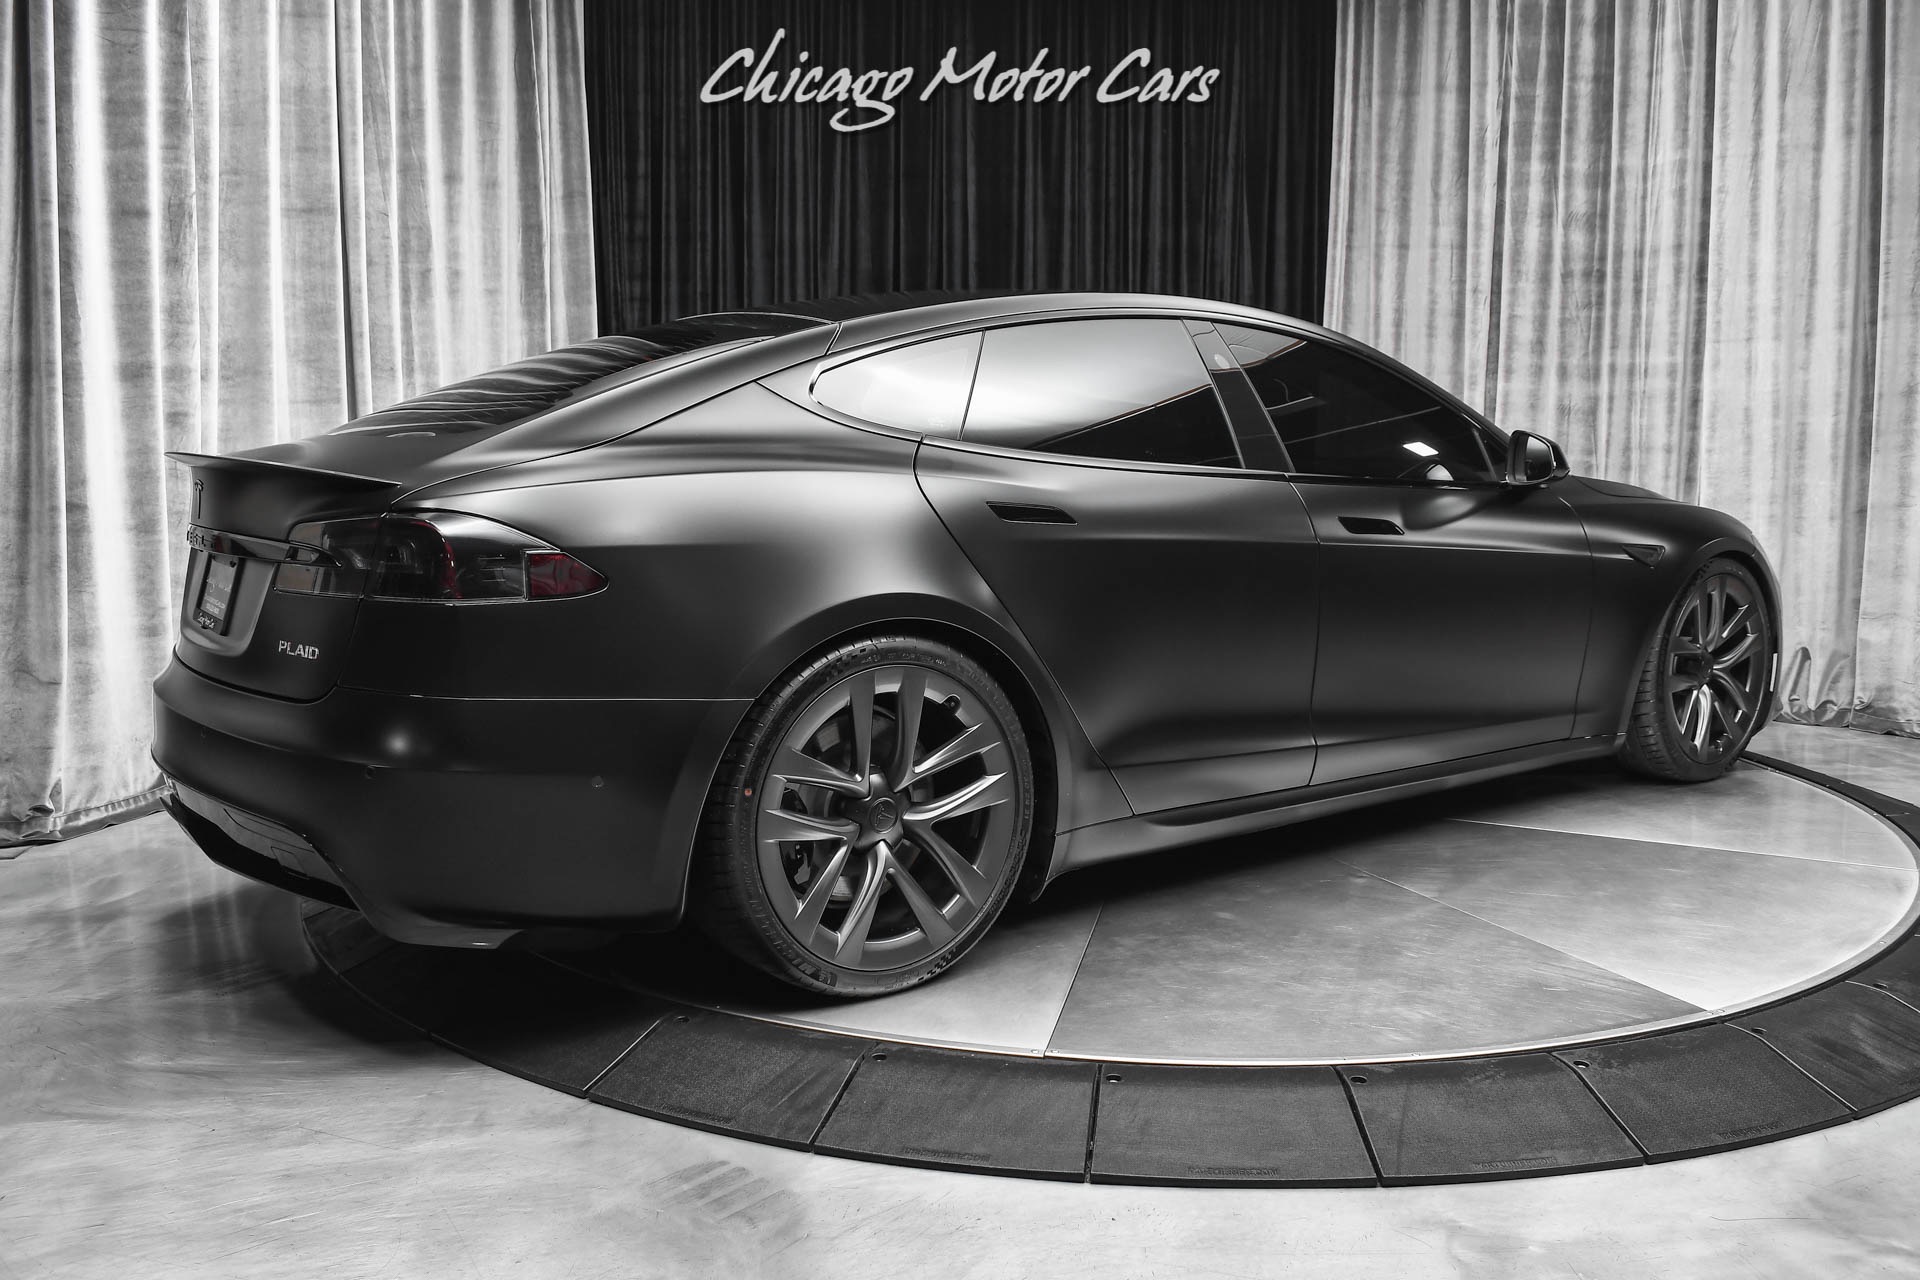 Used 2022 Tesla Model S Plaid Sedan SATIN BLACK 1 020 HP Worlds